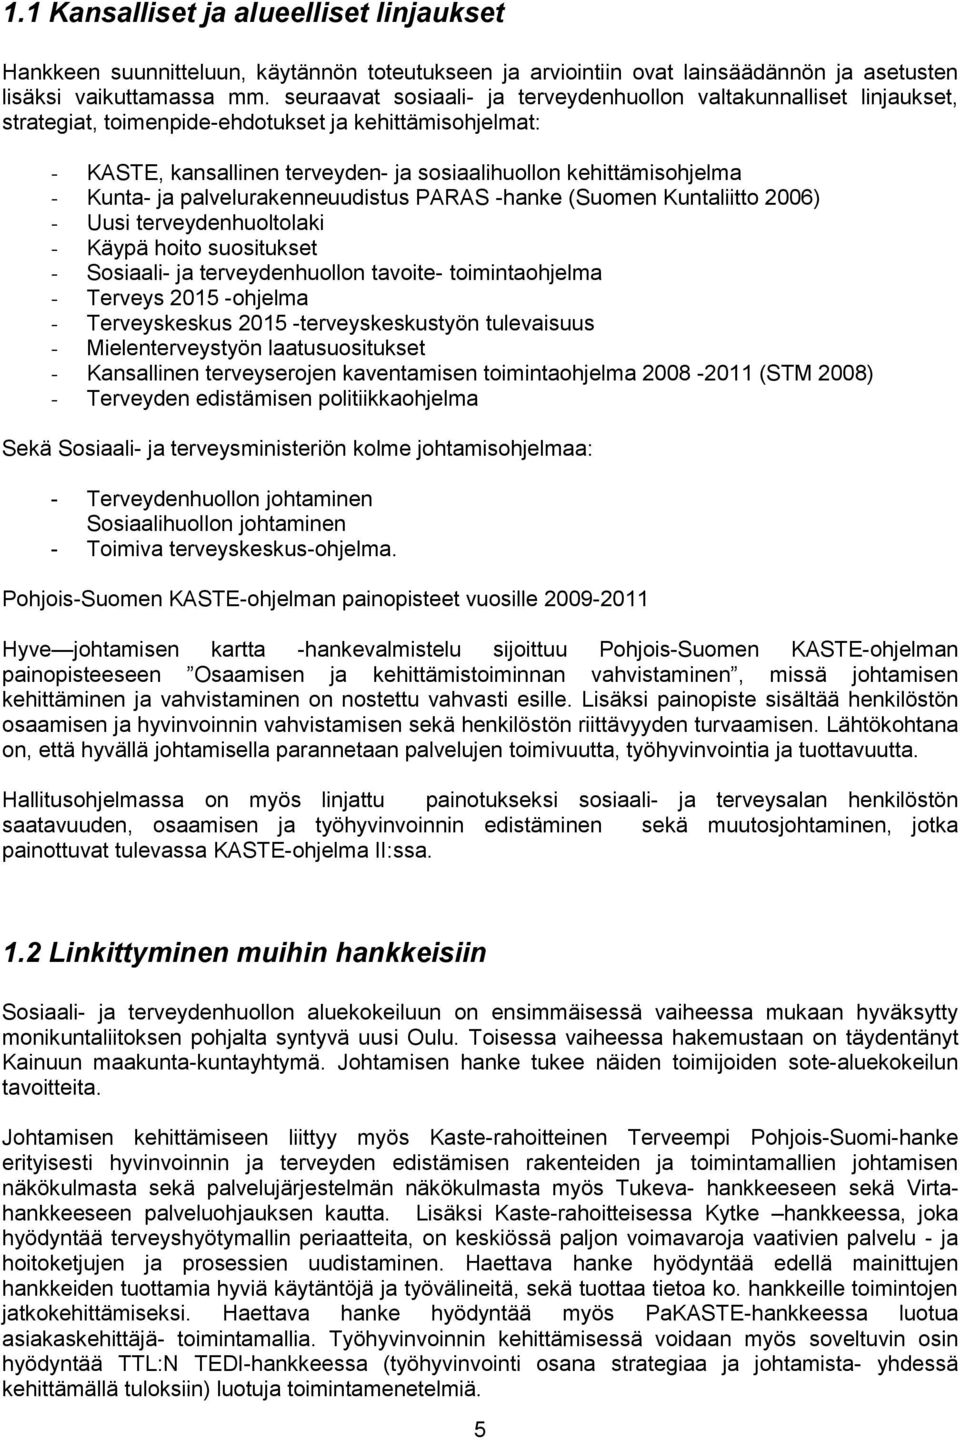 Kunta- ja palvelurakenneuudistus PARAS -hanke (Suomen Kuntaliitto 2006) - Uusi terveydenhuoltolaki - Käypä hoito suositukset - Sosiaali- ja terveydenhuollon tavoite- toimintaohjelma - Terveys 2015